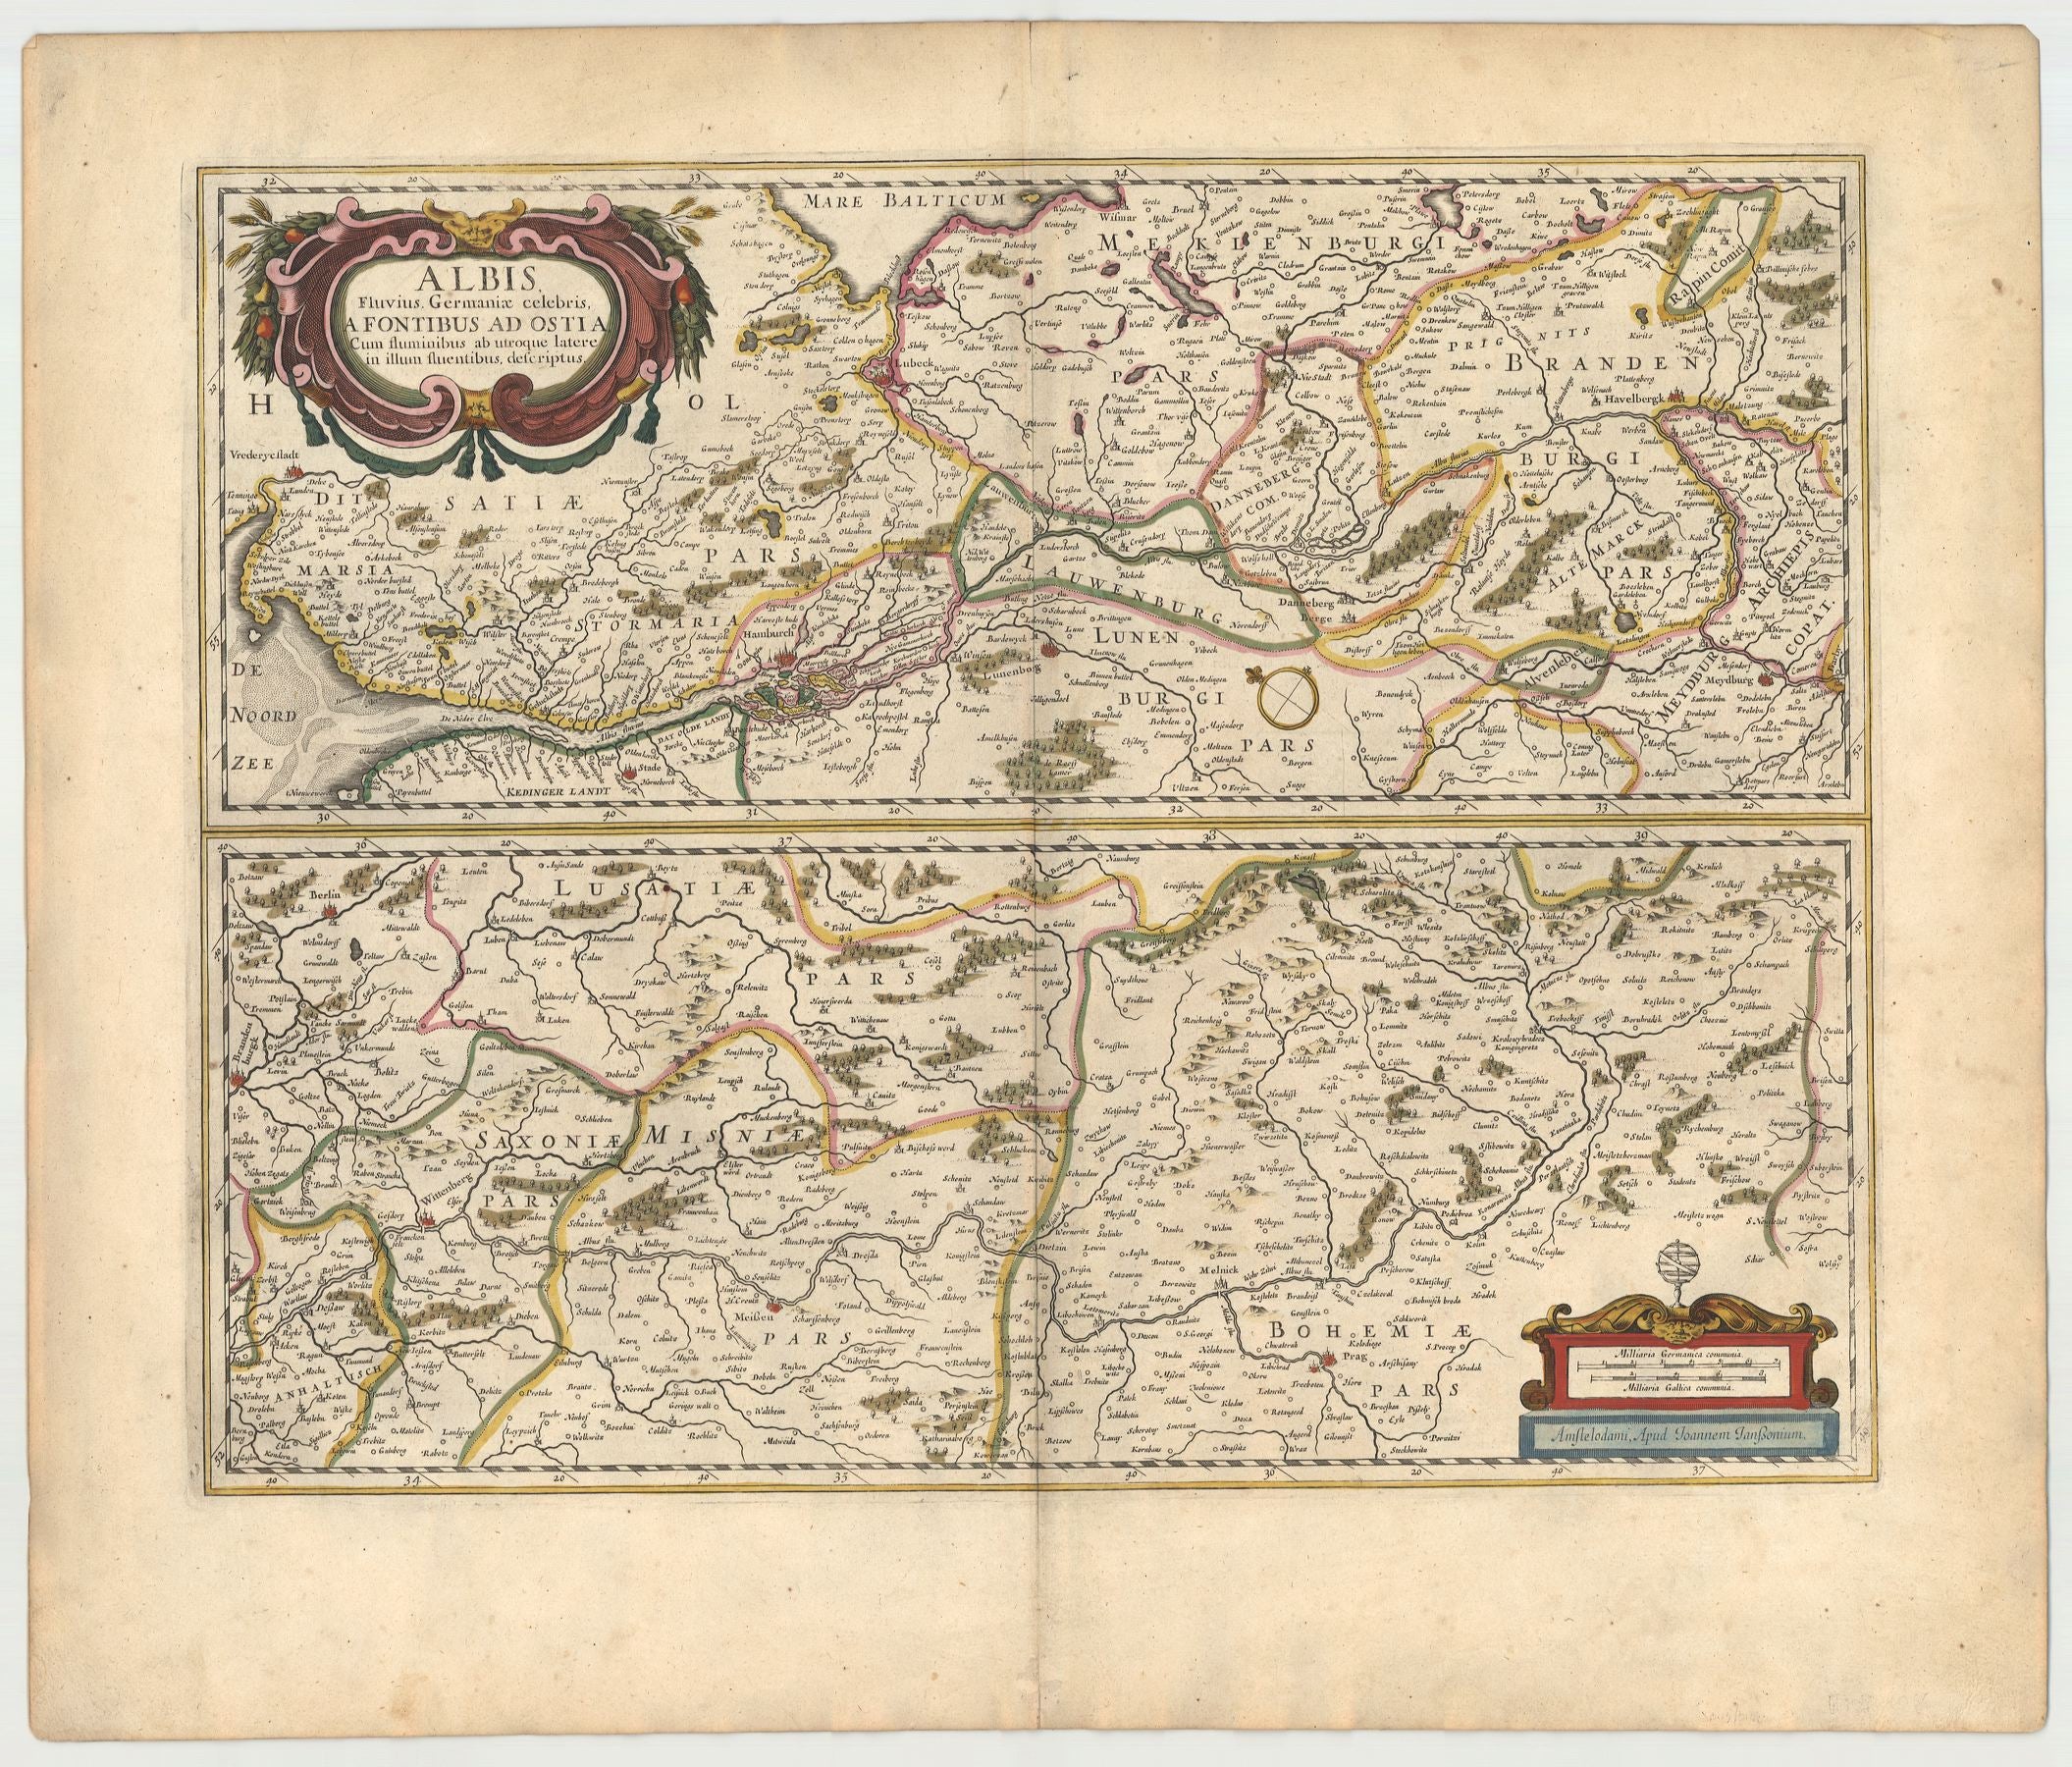 Janssonius, Johannes: Albis, Fluvius Germaniae celebris, a Fontibus ad Ostia. 1646